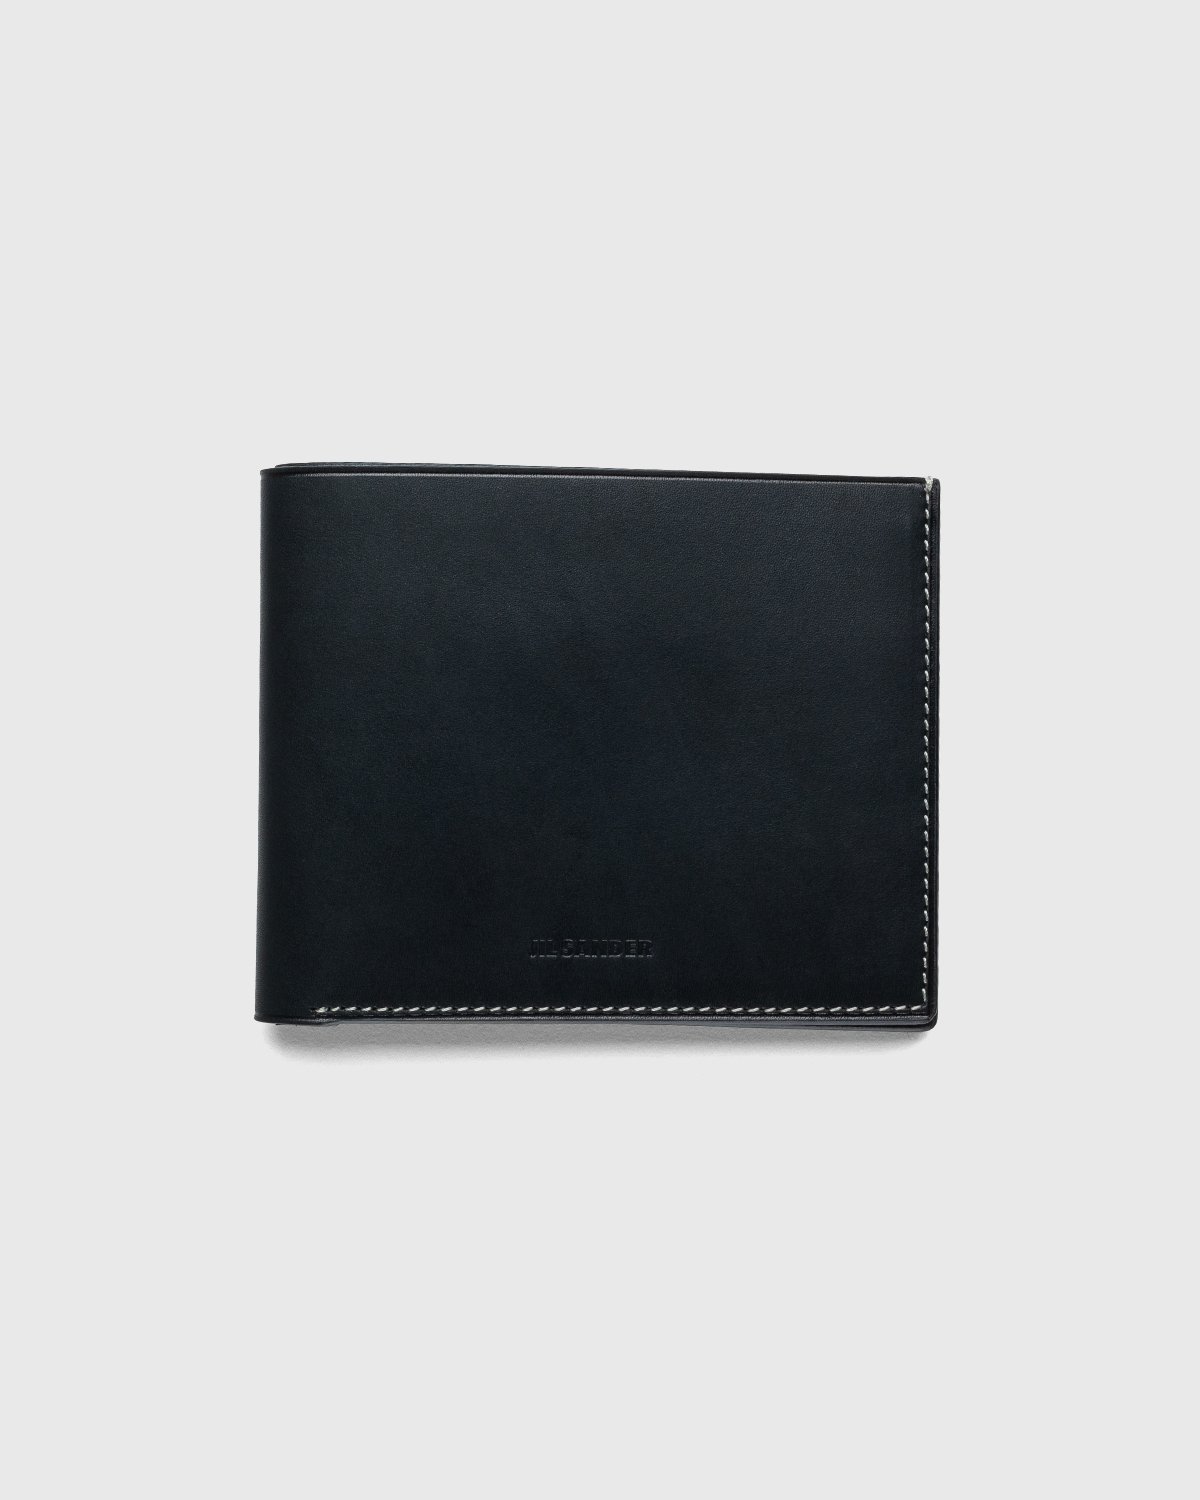 Jil Sander - Pocket Wallet Black - Accessories - Black - Image 1